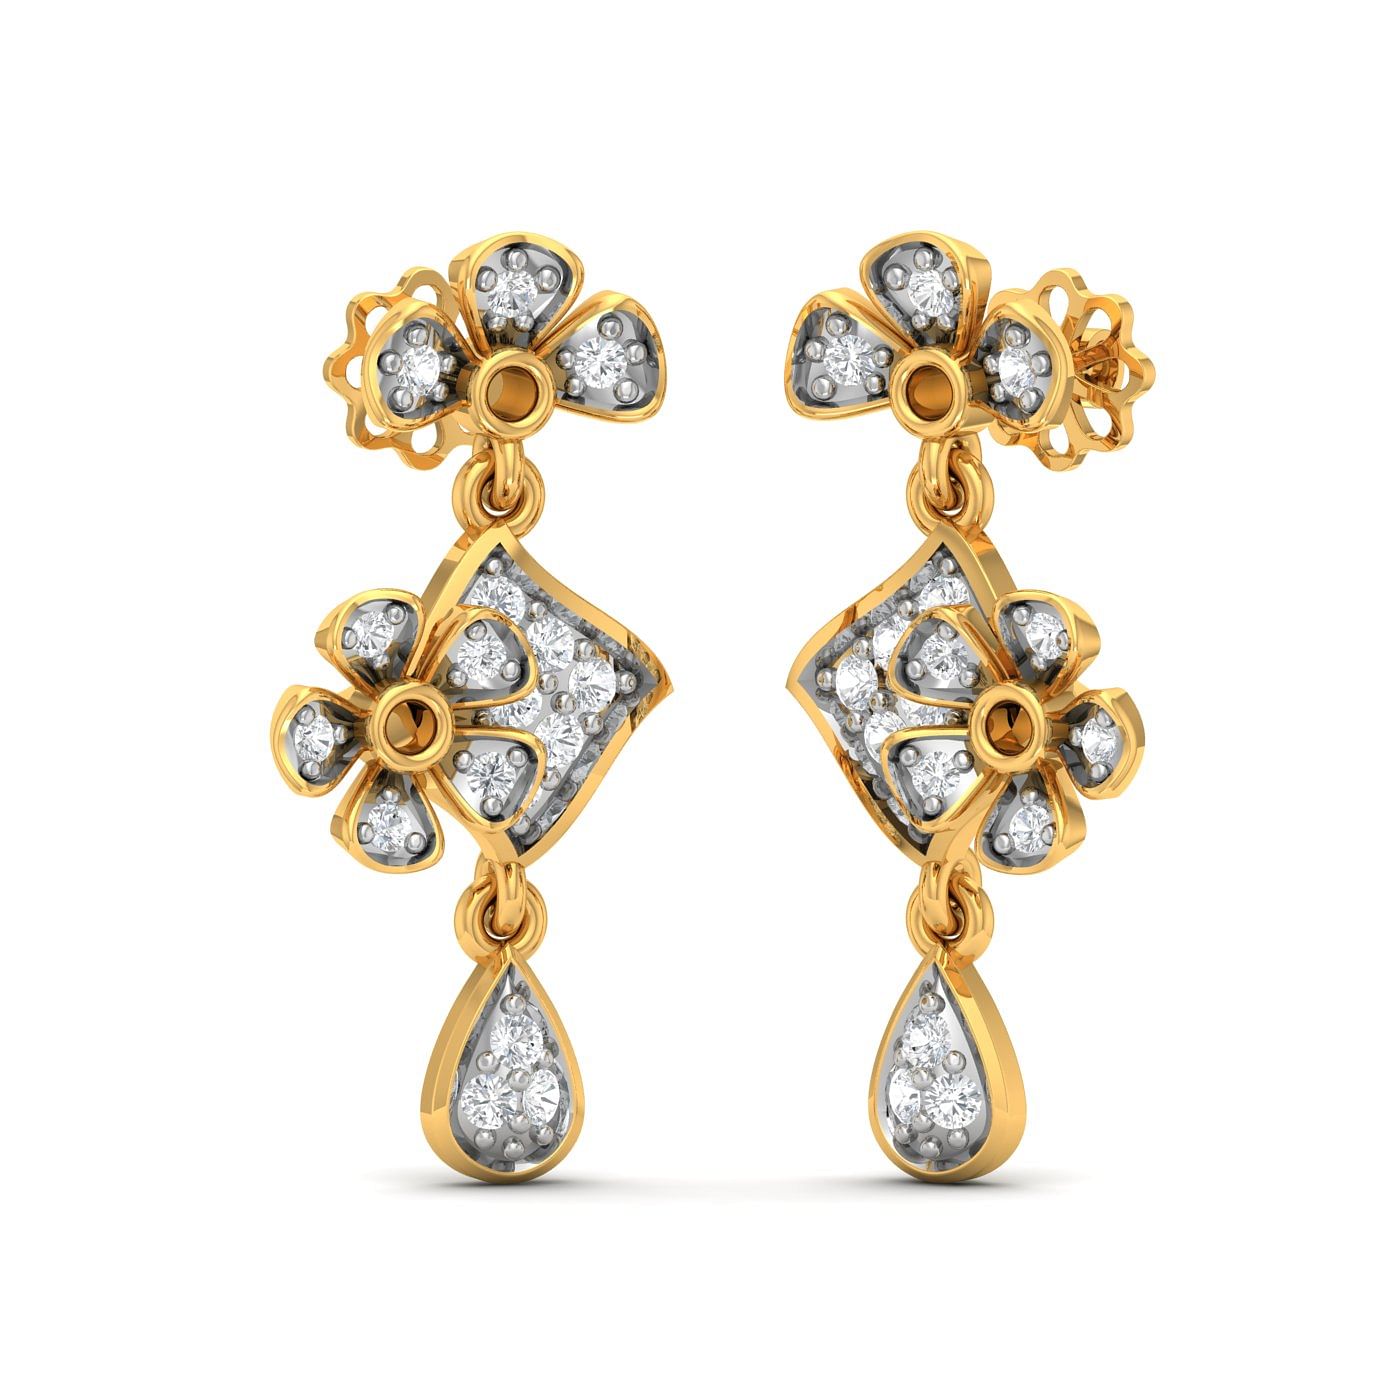 Flower style drop diamond earring set in yellow gold